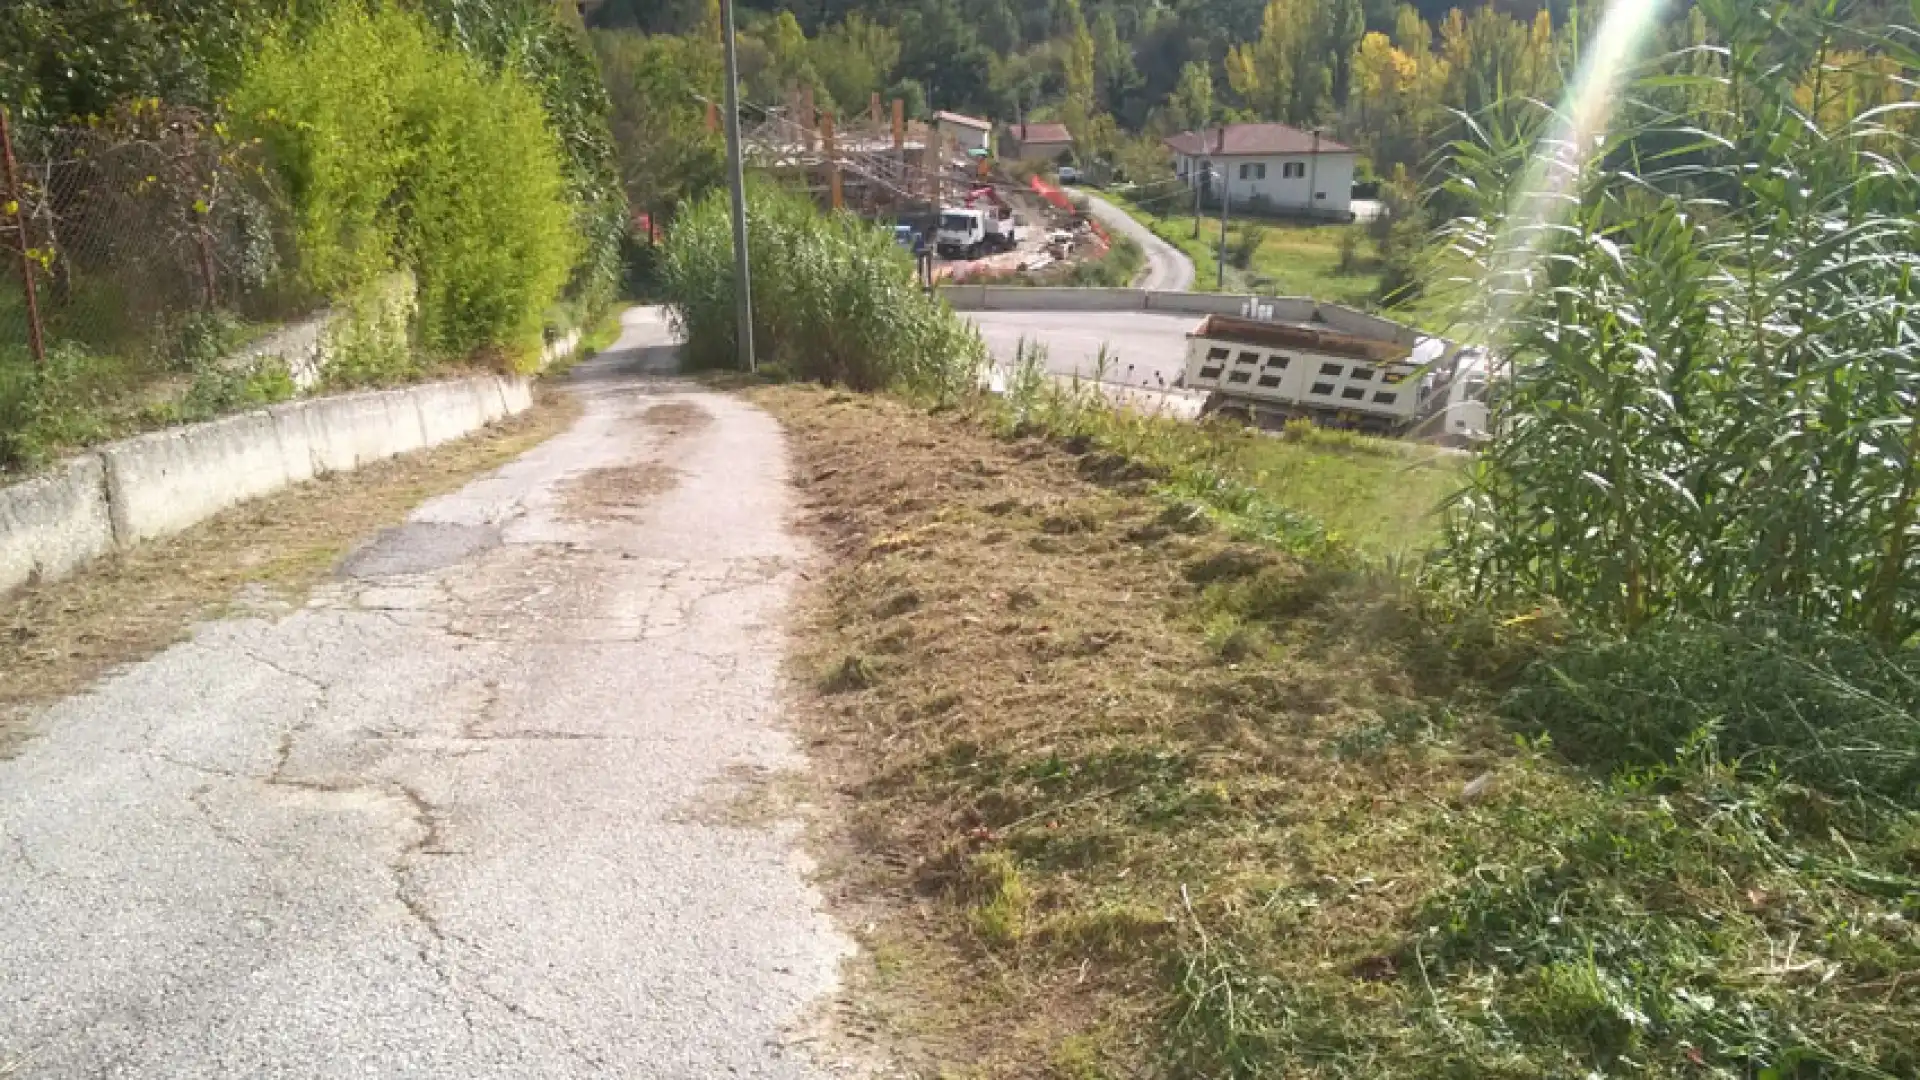 Colli a Volturno: pulizia del territorio e manutenzione stradale. L’Amministrazione Incollingo sul pezzo.